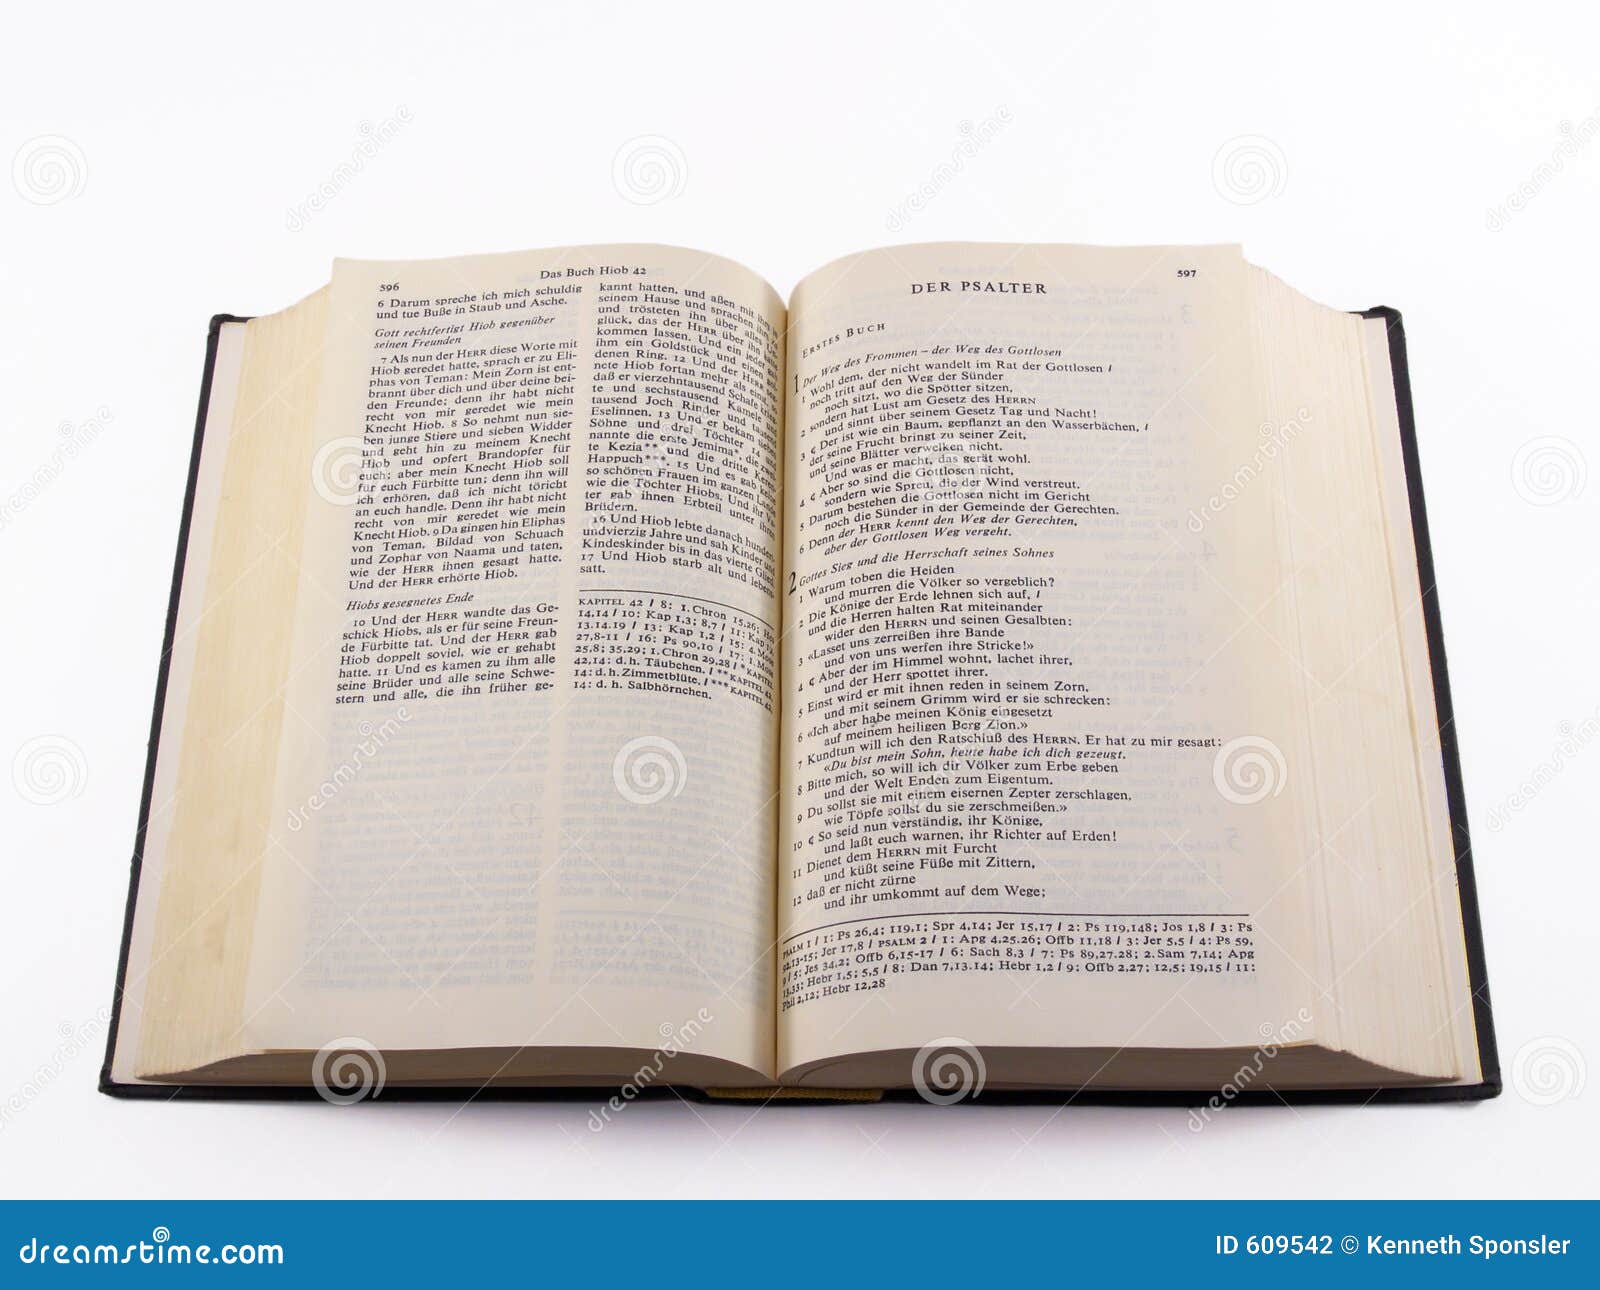 german bible - psalms